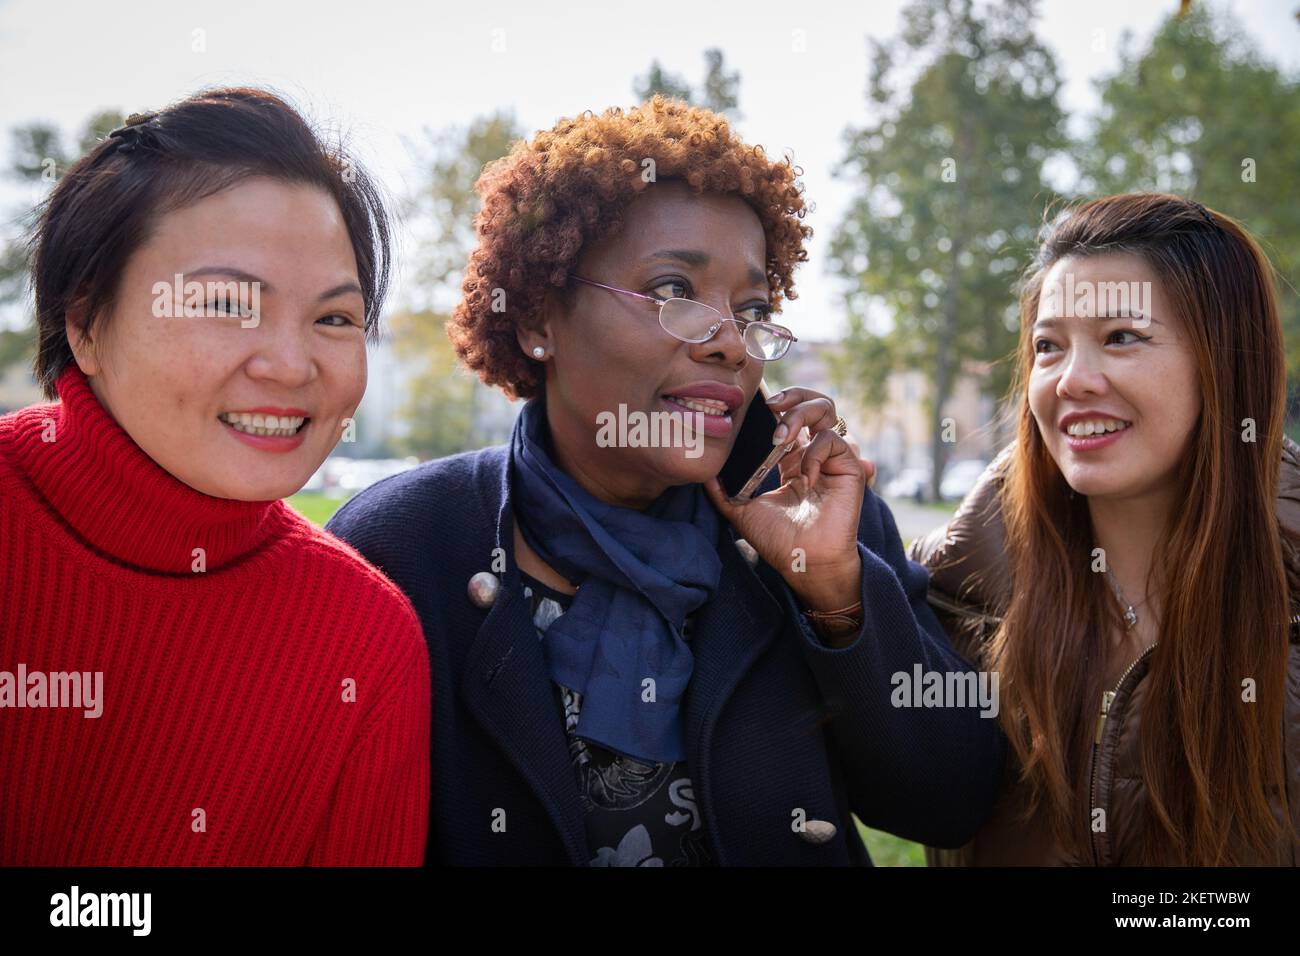 Trois femmes matures ensemble dans un parc, l'amitié entre des personnes de différentes origines ethniques Banque D'Images